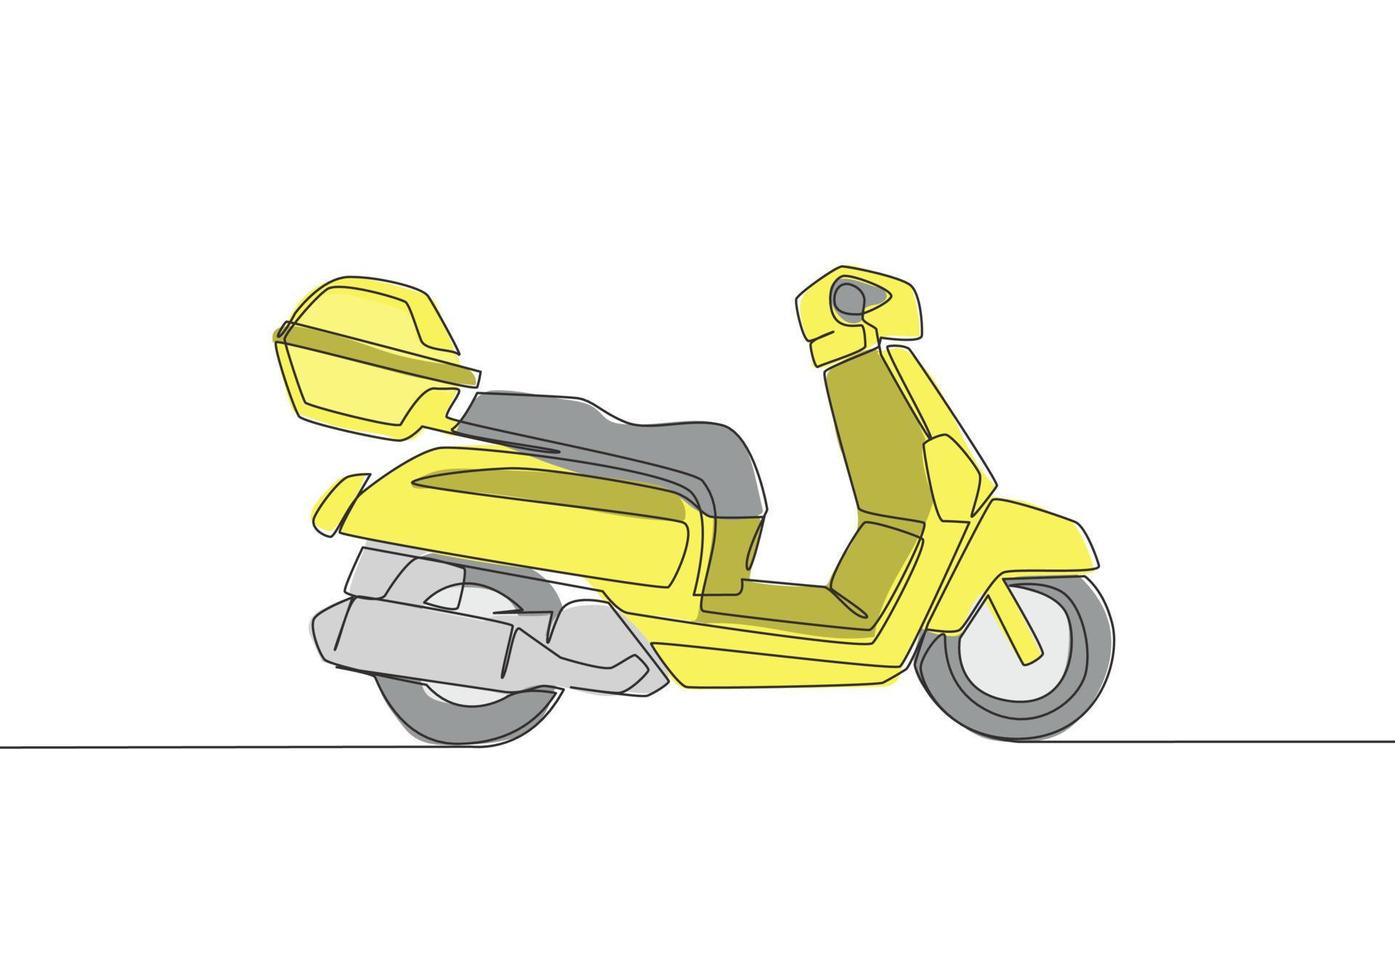 Célibataire continu ligne dessin de courrier livraison un service moto logo. scooter moto concept. un ligne dessiner conception vecteur illustration